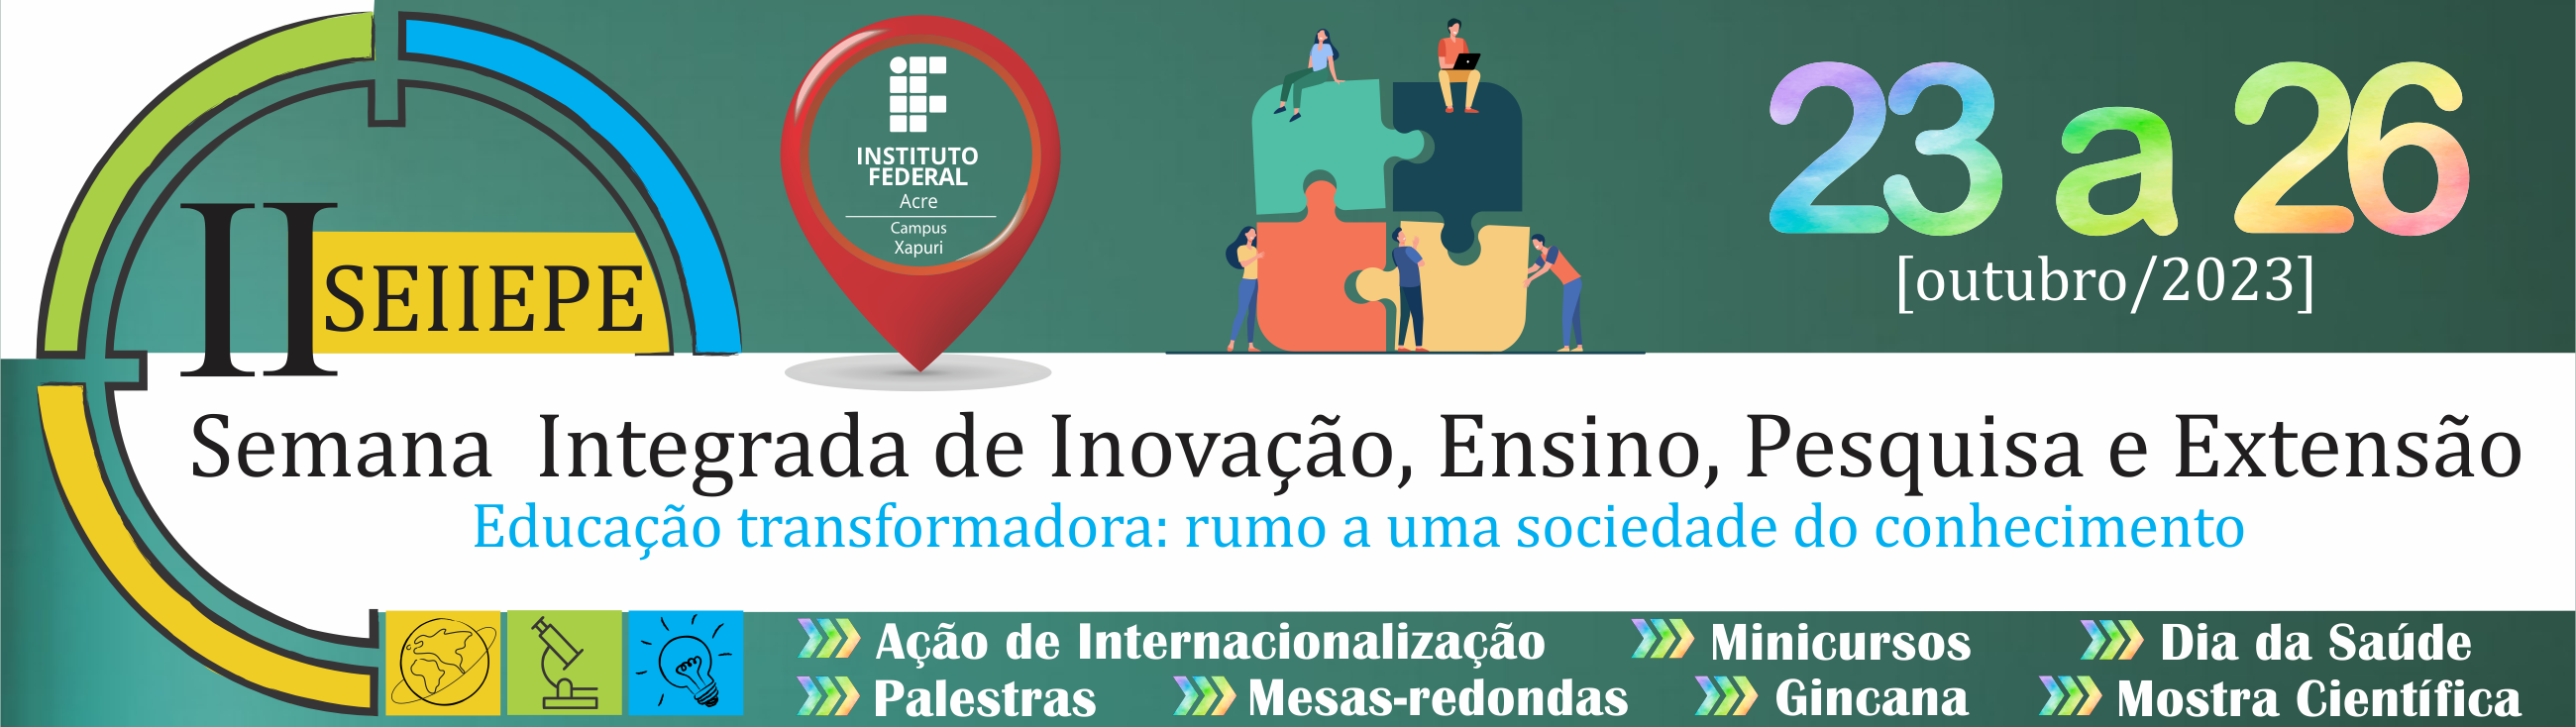 banner do II SEIIEPE - Semana Integrada de Inovação Ensino Pesquisa e Extensão do IFAC - Campus Xapuri